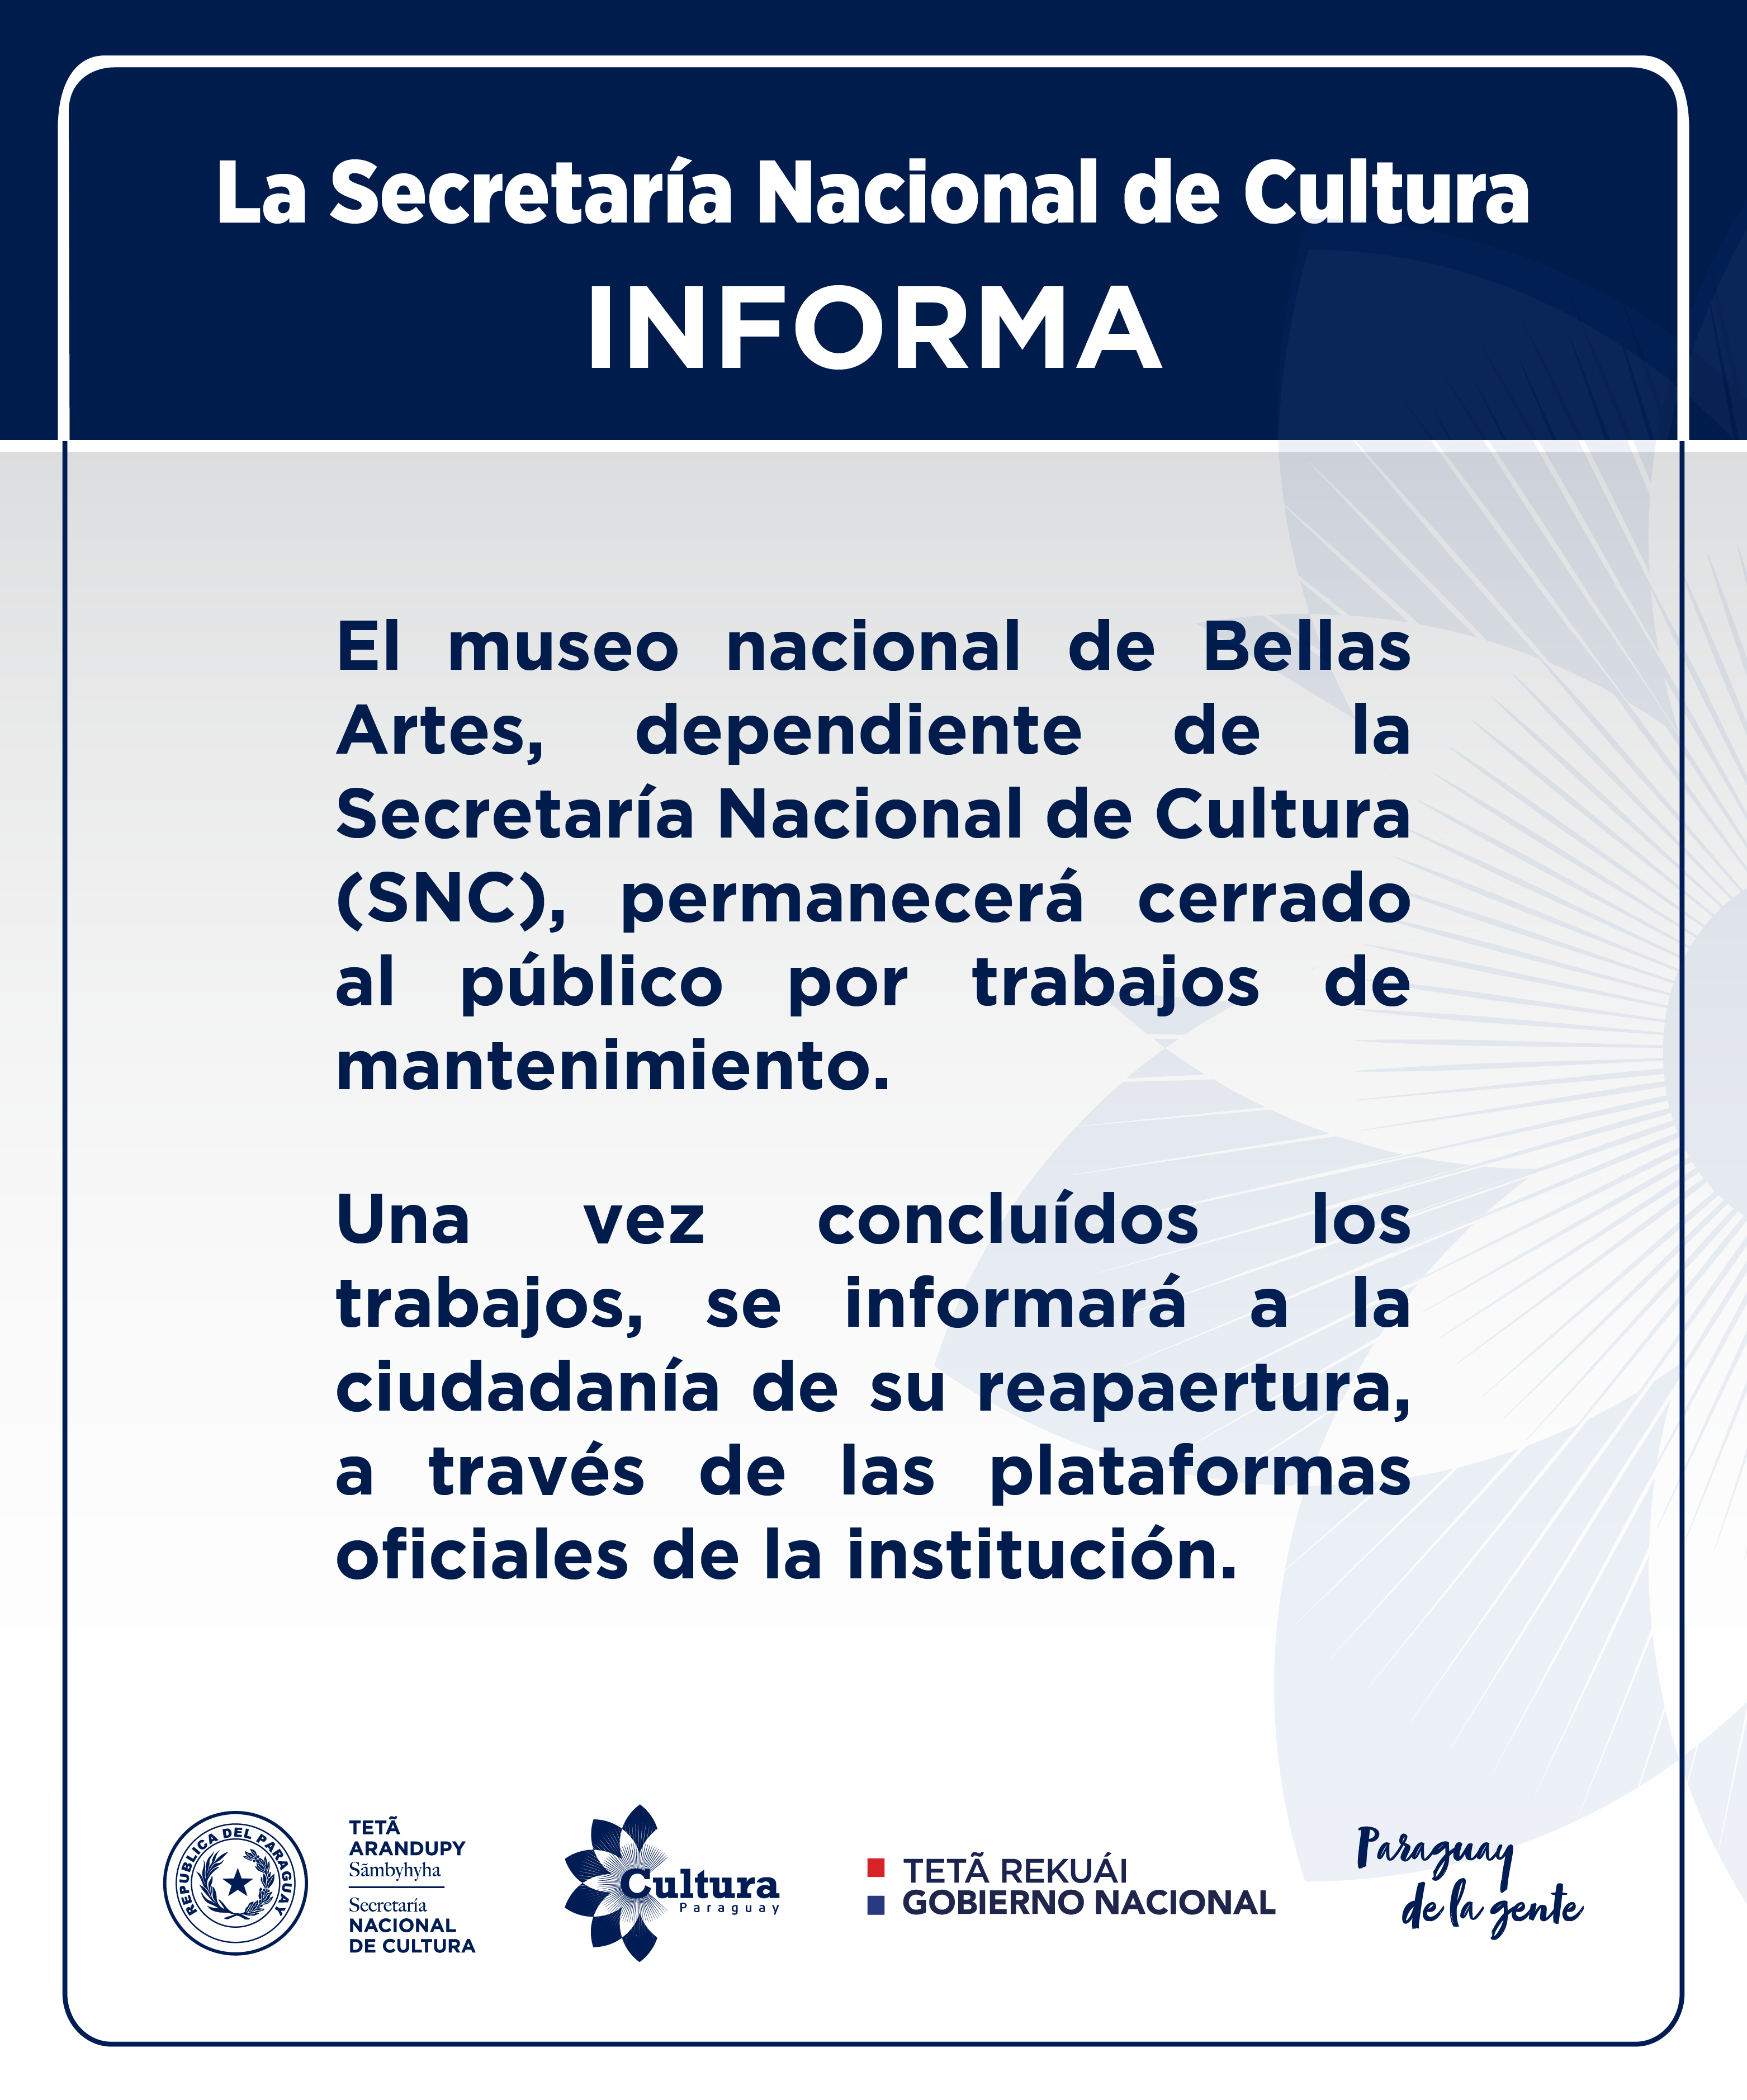 La Secretaría Nacional de Cultura informa imagen